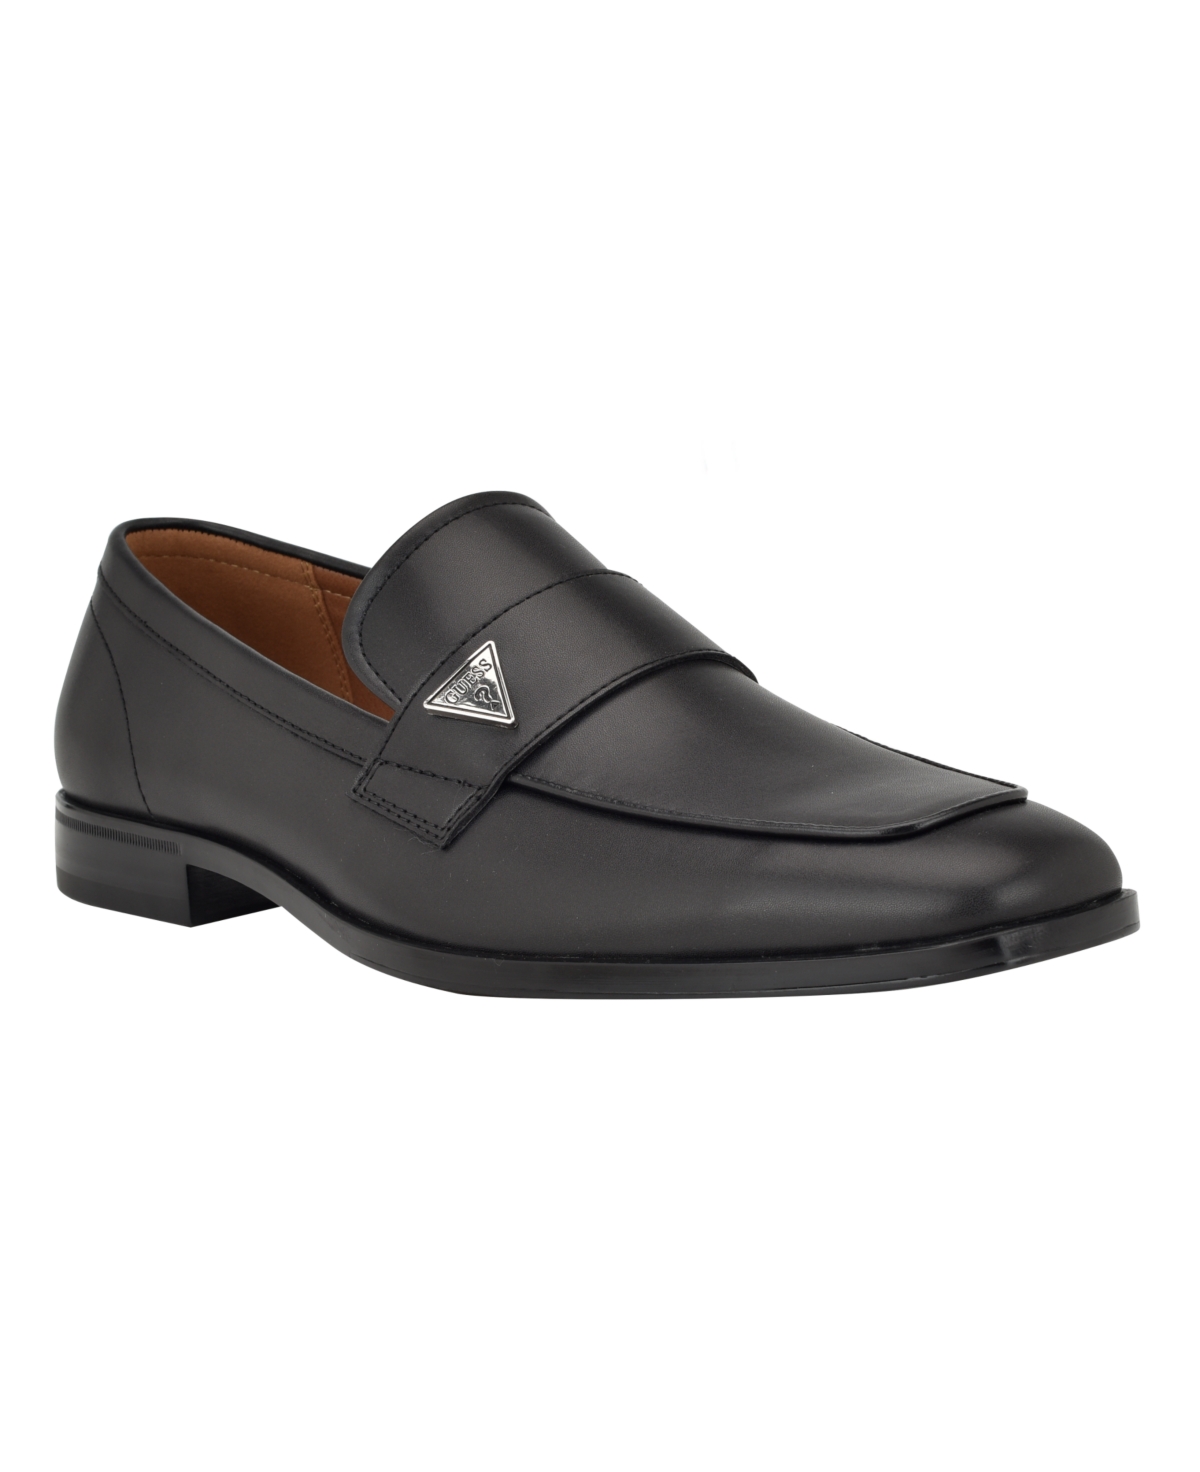 Men's Holt Slip On Ornamented Dress Loafers - Black